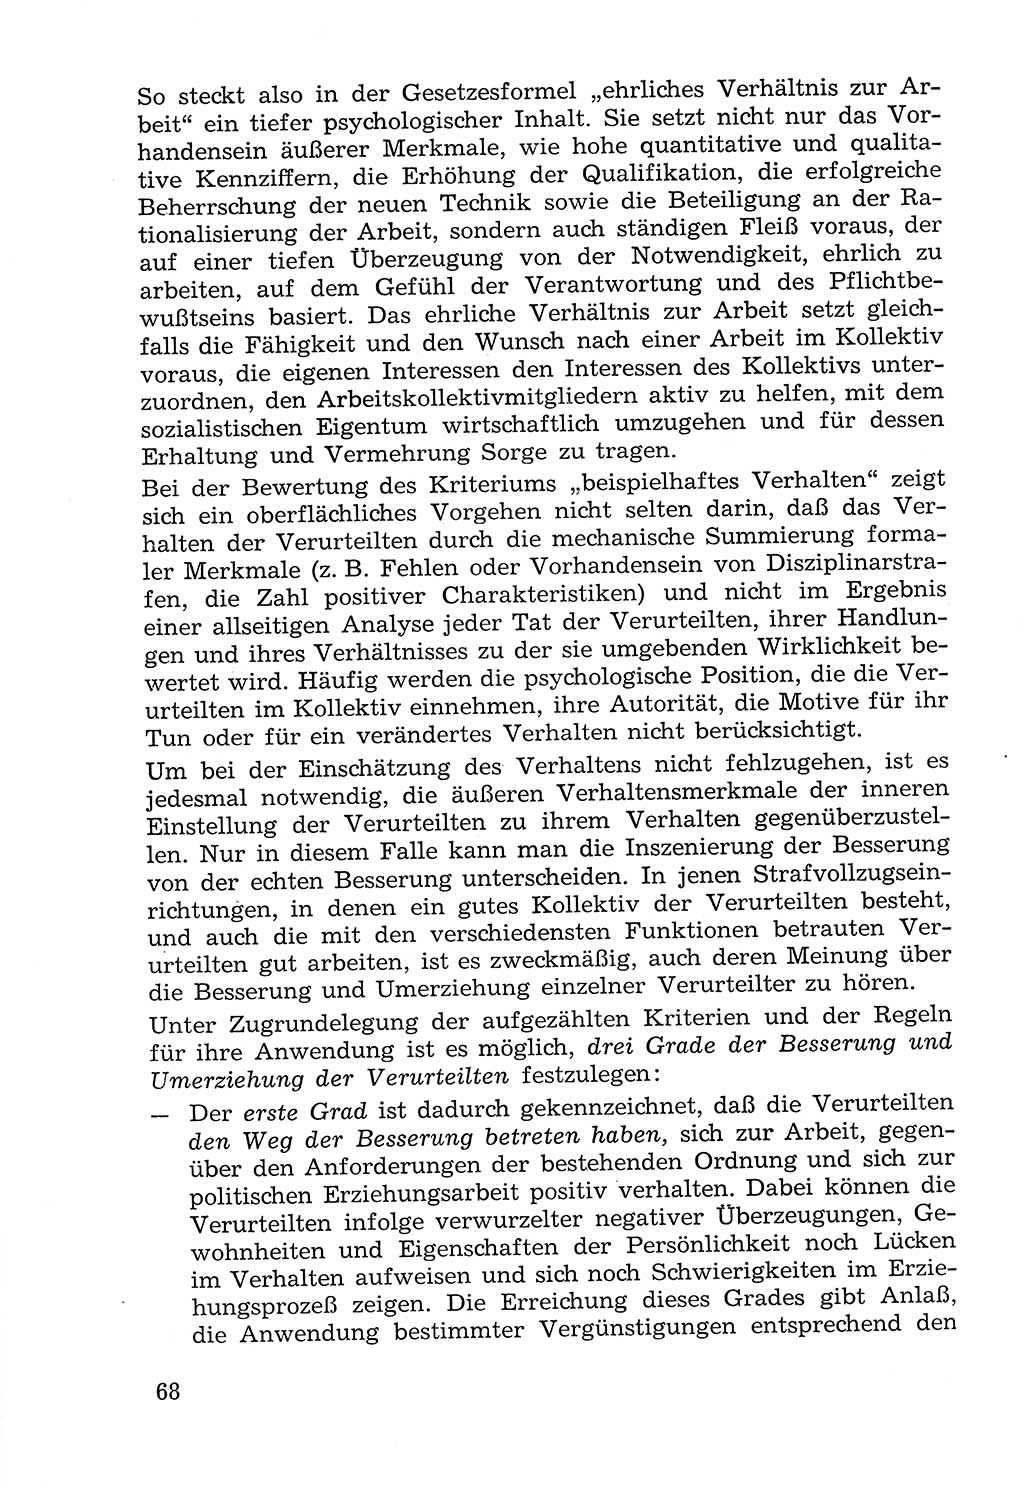 Lehrbuch der Strafvollzugspädagogik [Deutsche Demokratische Republik (DDR)] 1969, Seite 68 (Lb. SV-Pd. DDR 1969, S. 68)